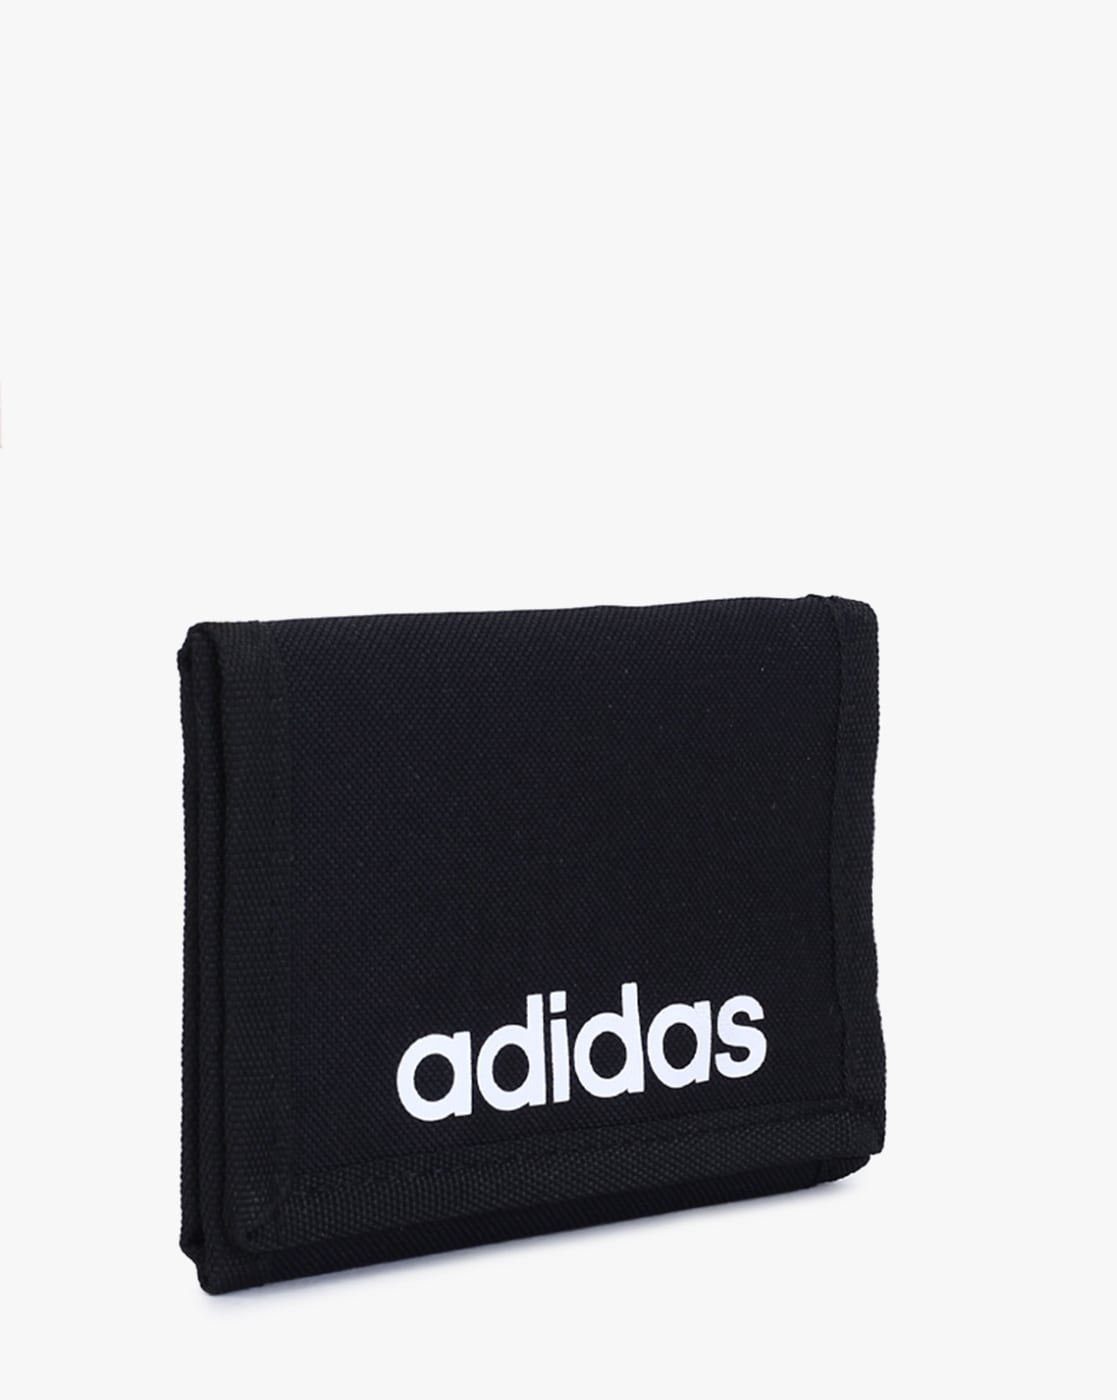 adidas tri fold wallet